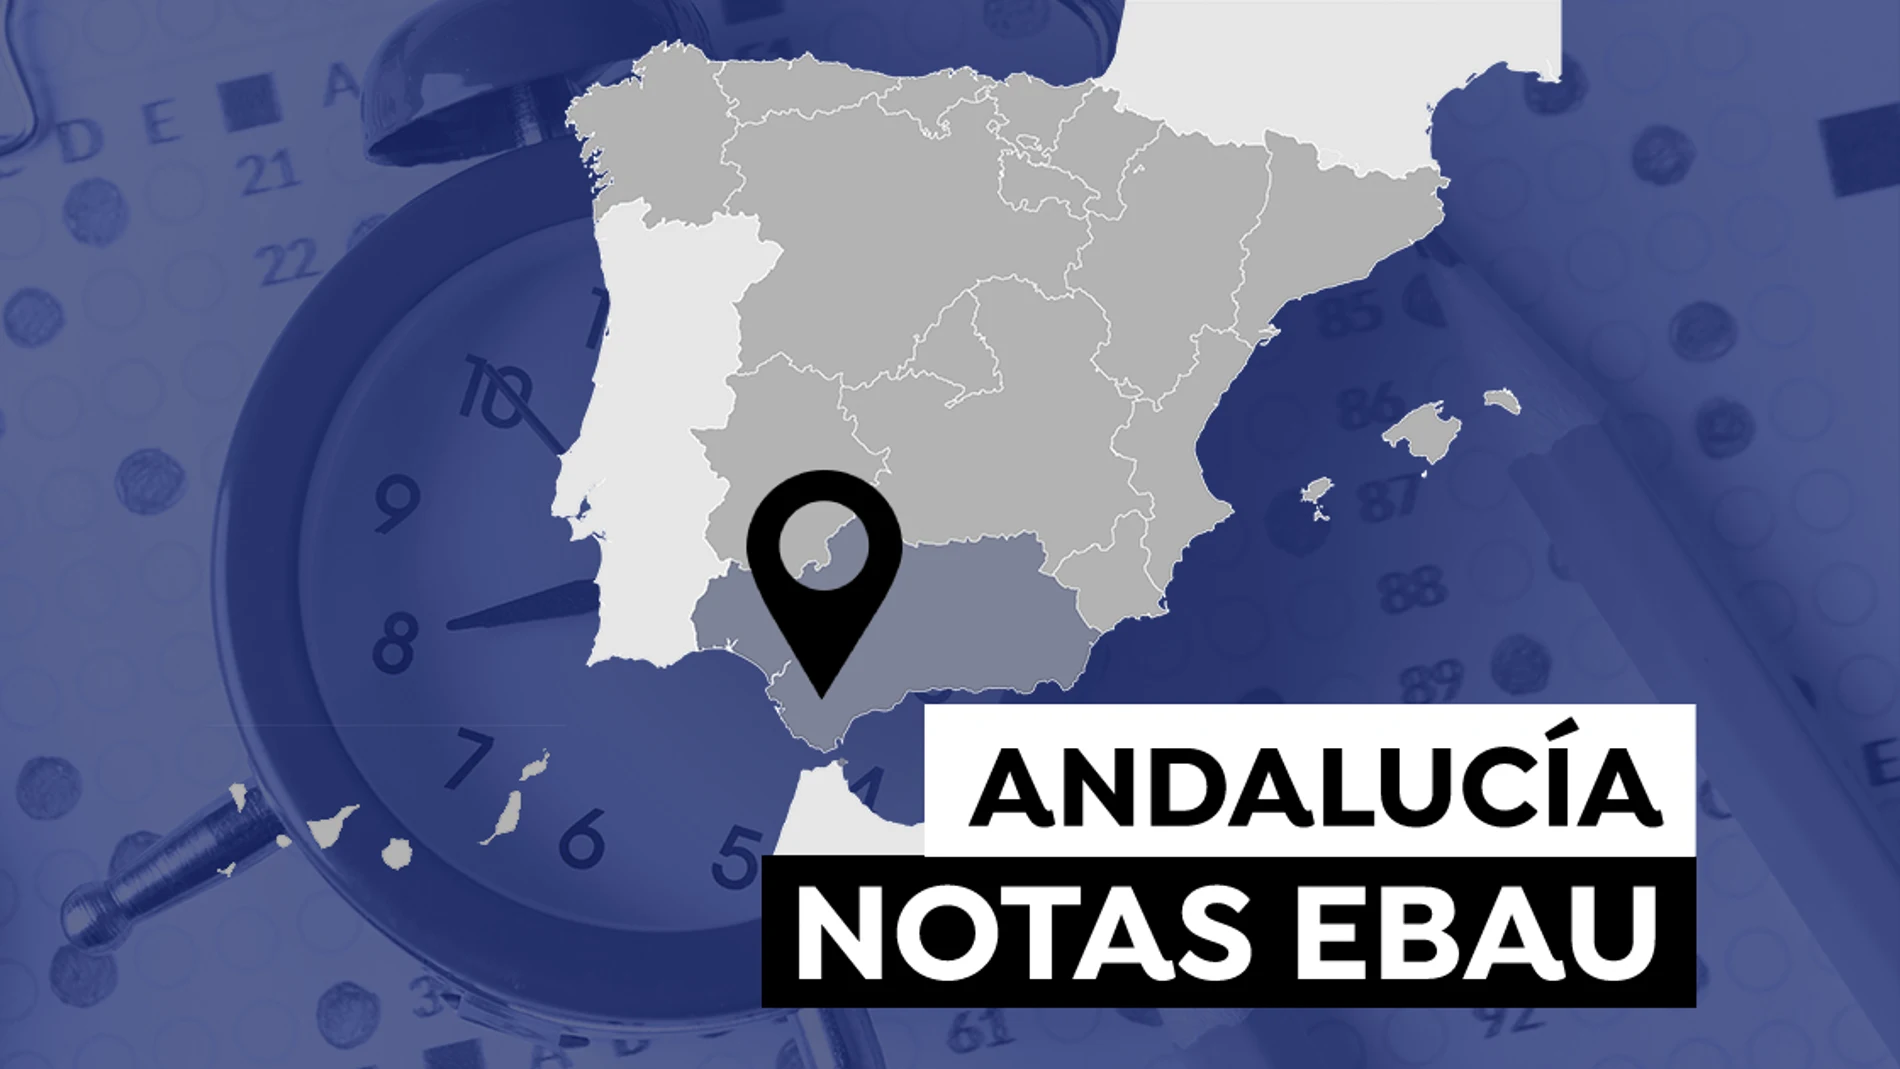 Notas de la Evau en Andalucía 2021: Consulta el resultado de la selectividad